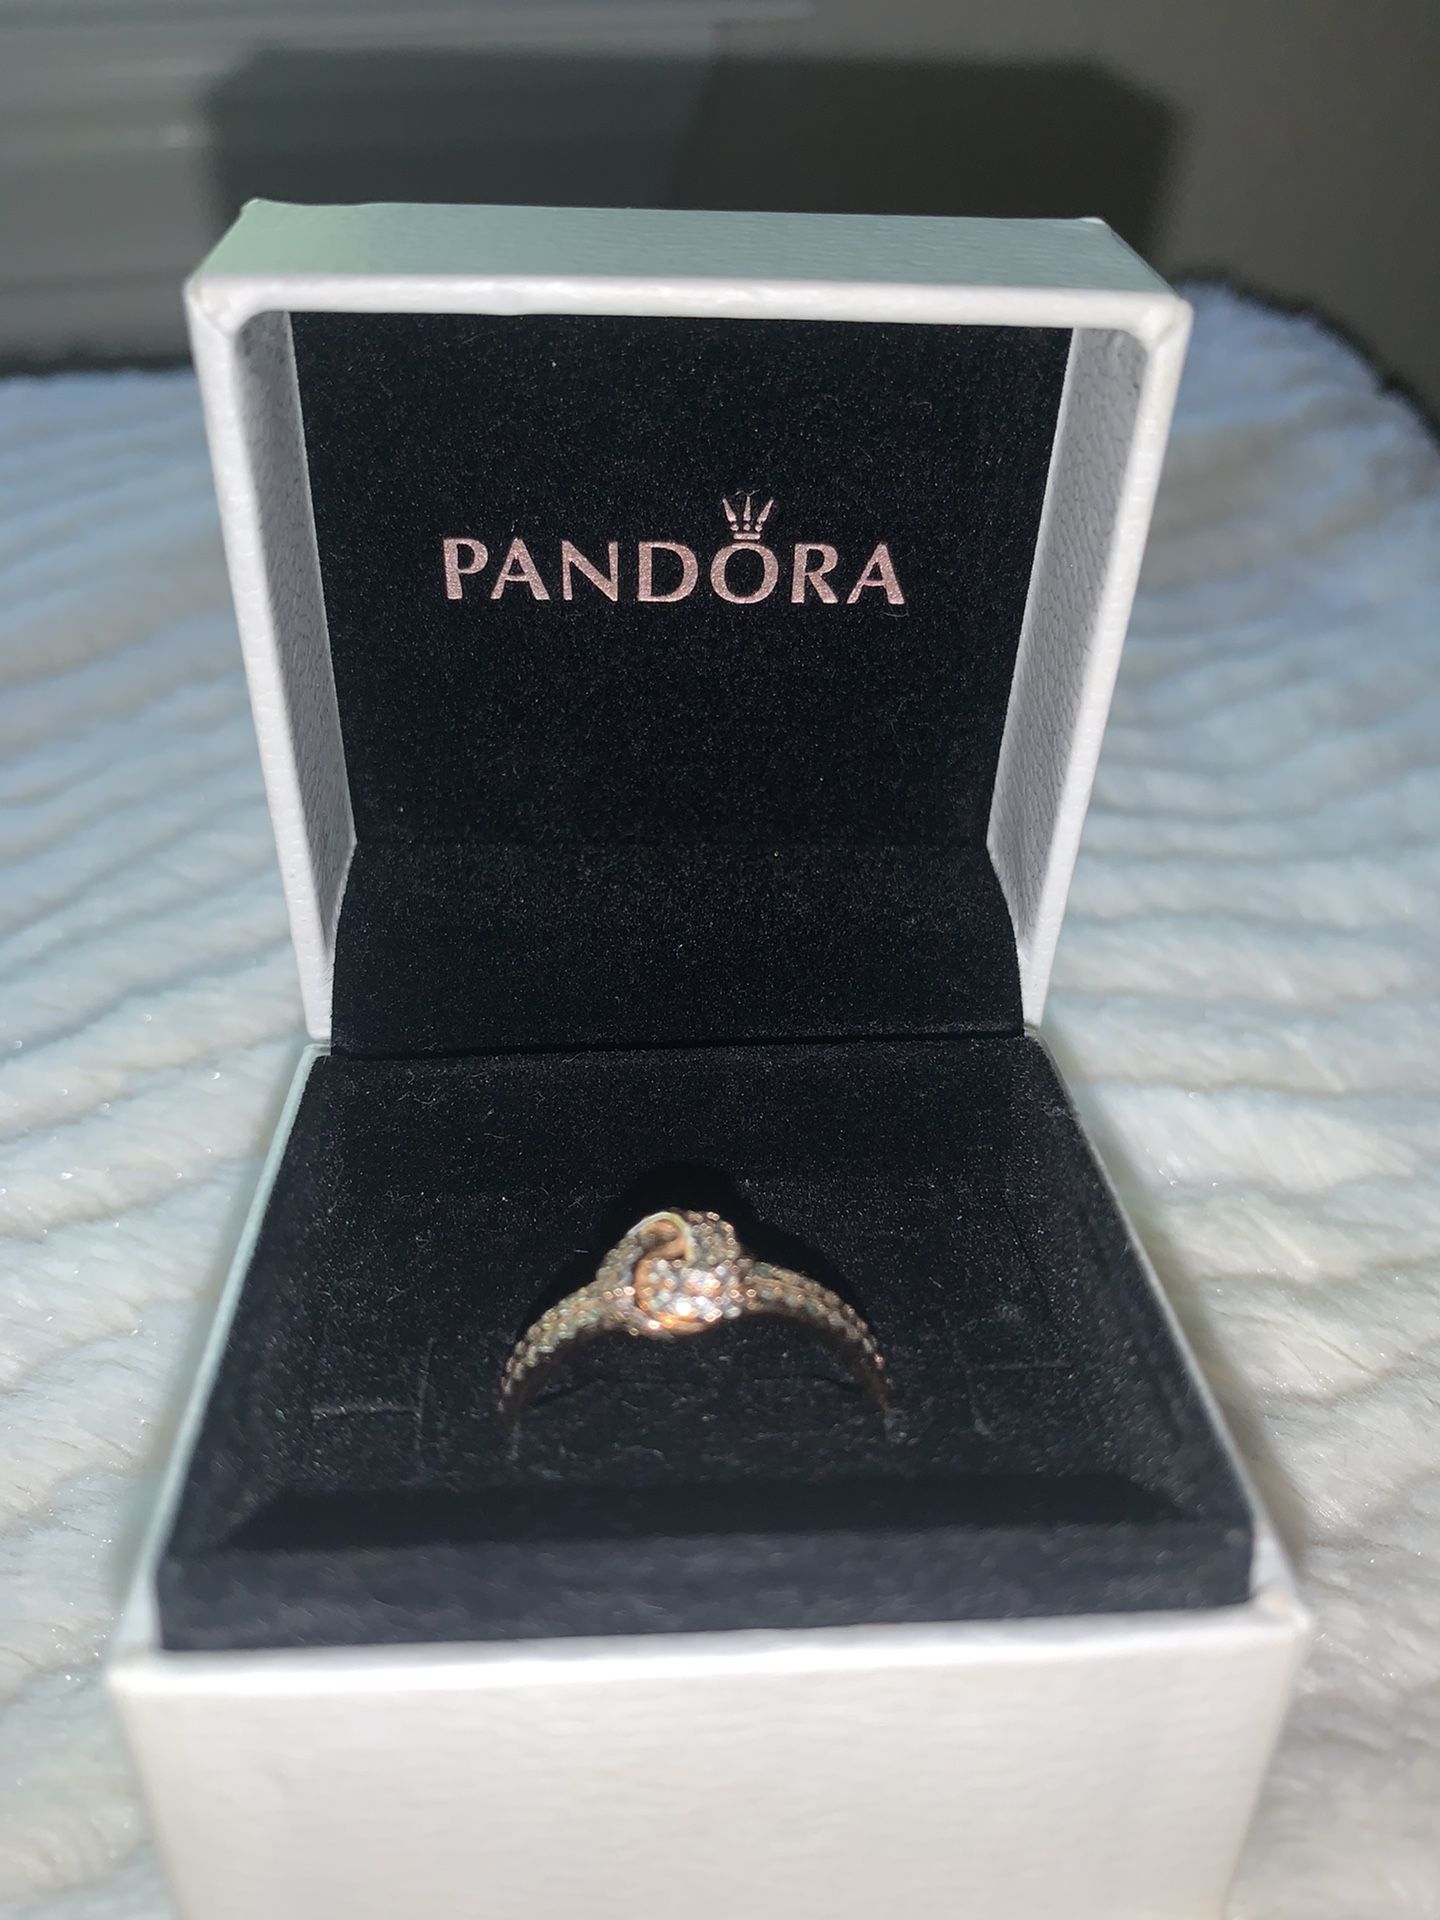 !! Pandora Ring in Original Packaging !!